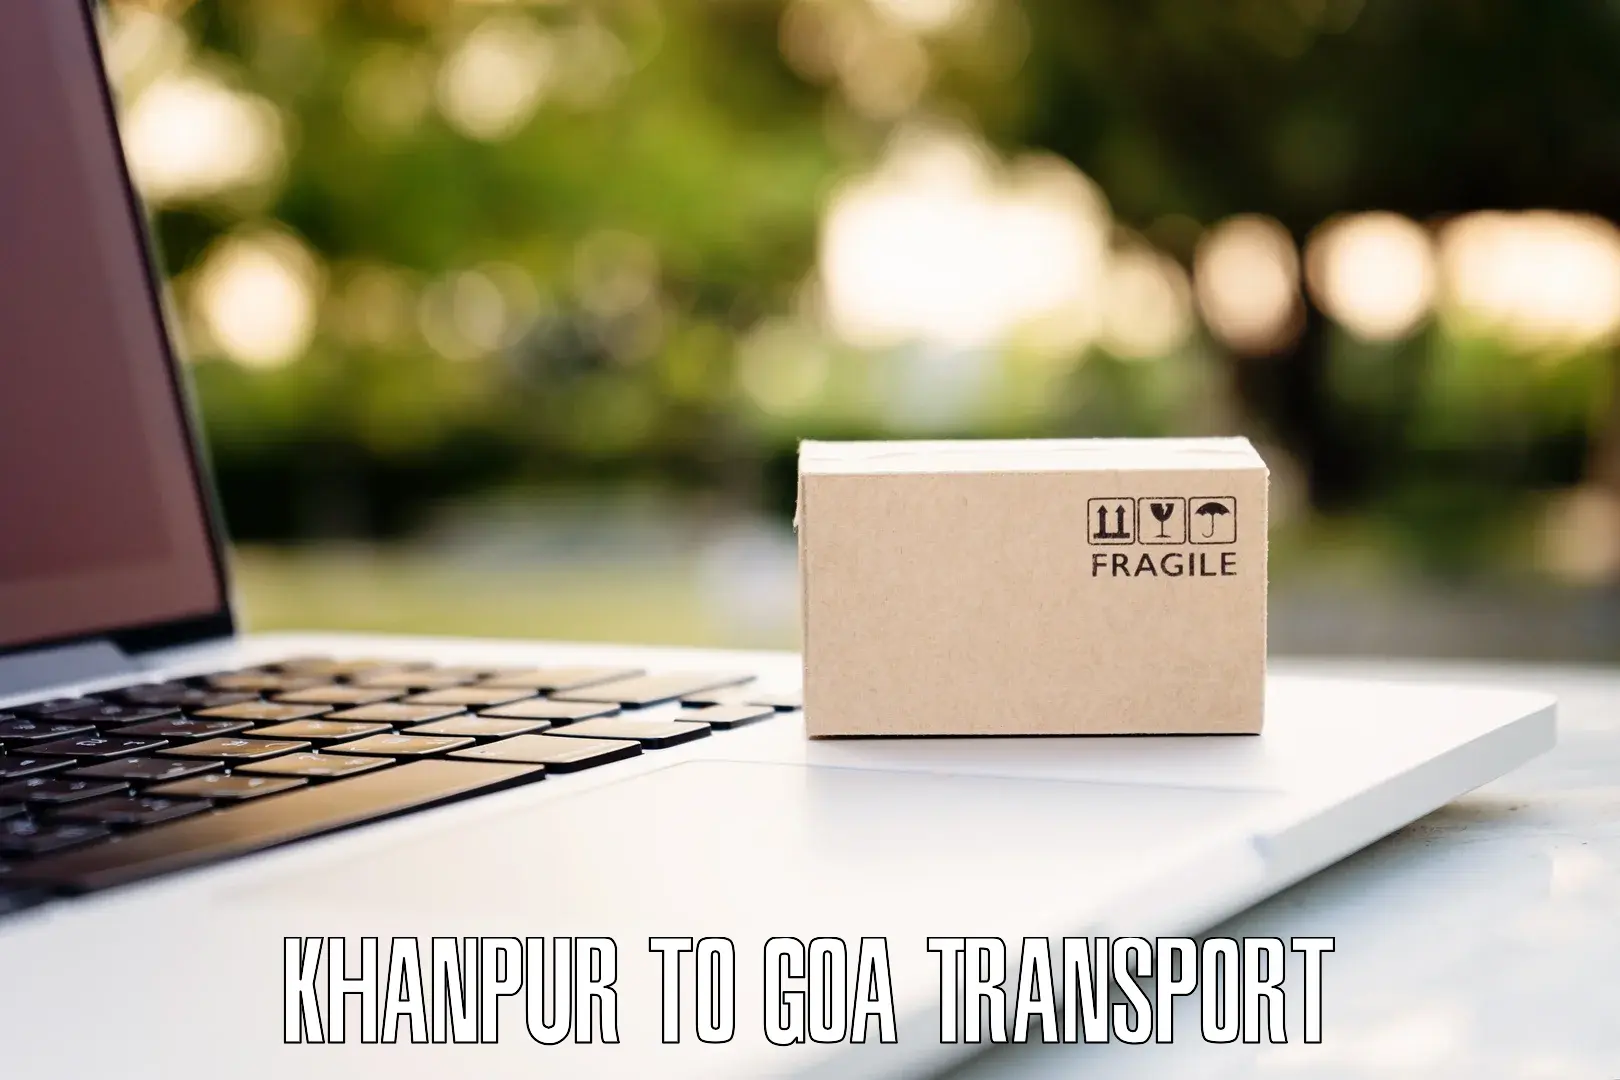 Online transport in Khanpur to Vasco da Gama